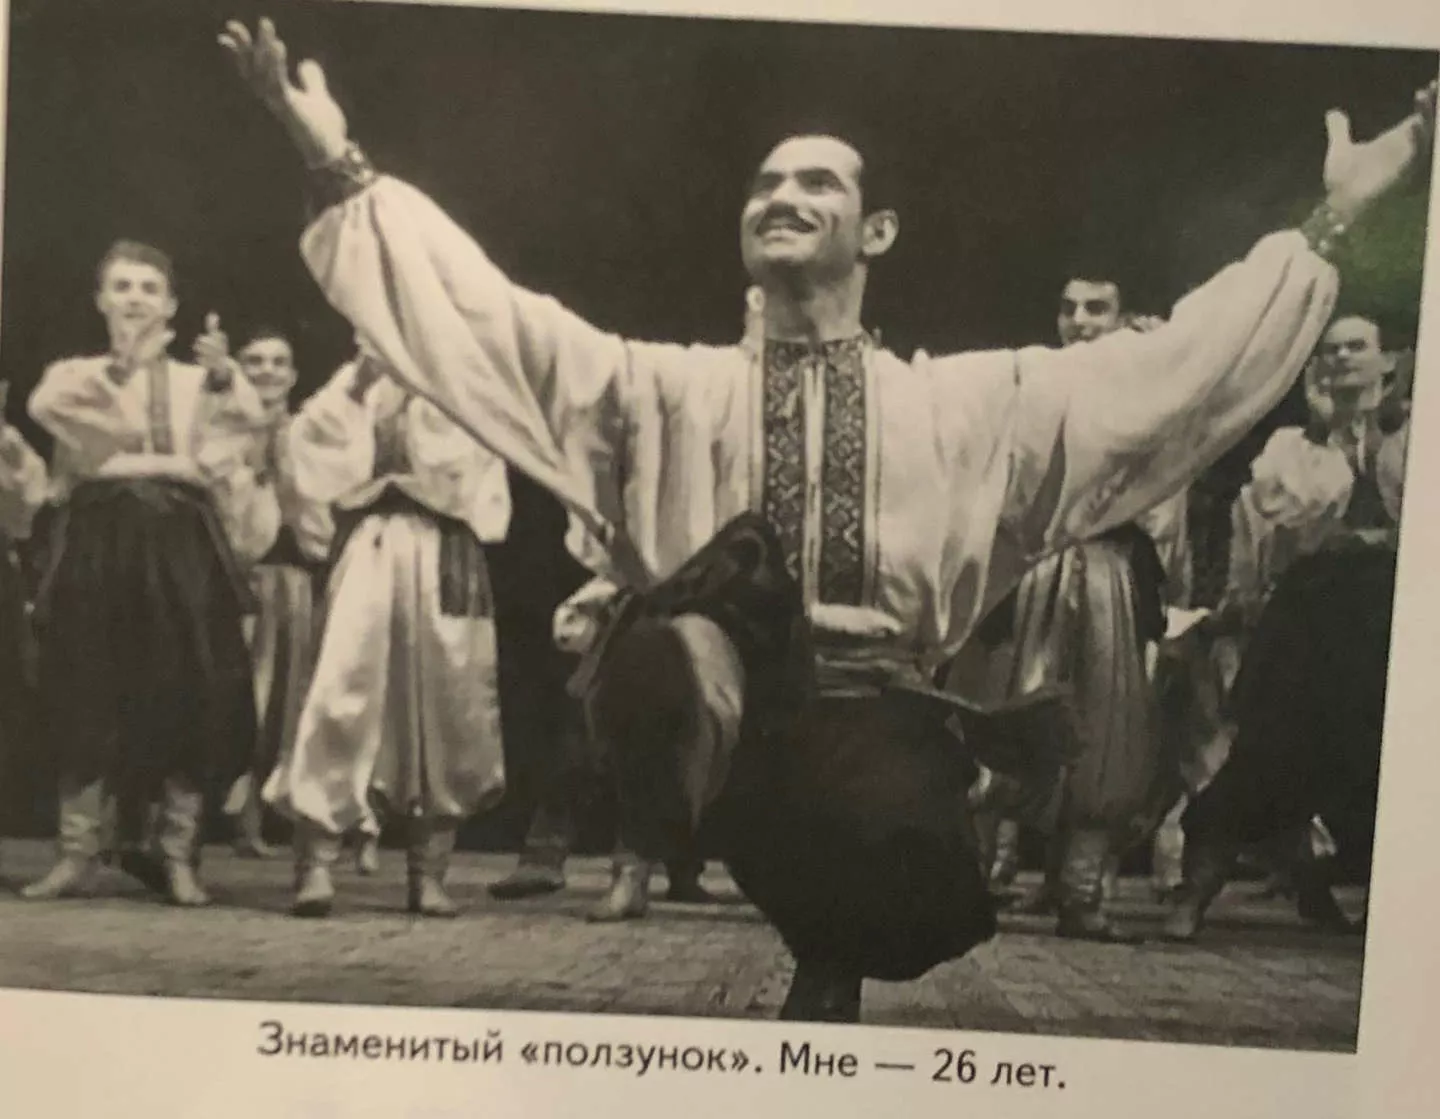 26-річний Григорій Чапкіс виконує "повзунець".
Фото з його книги "Танець і любов: секрети довголіття"